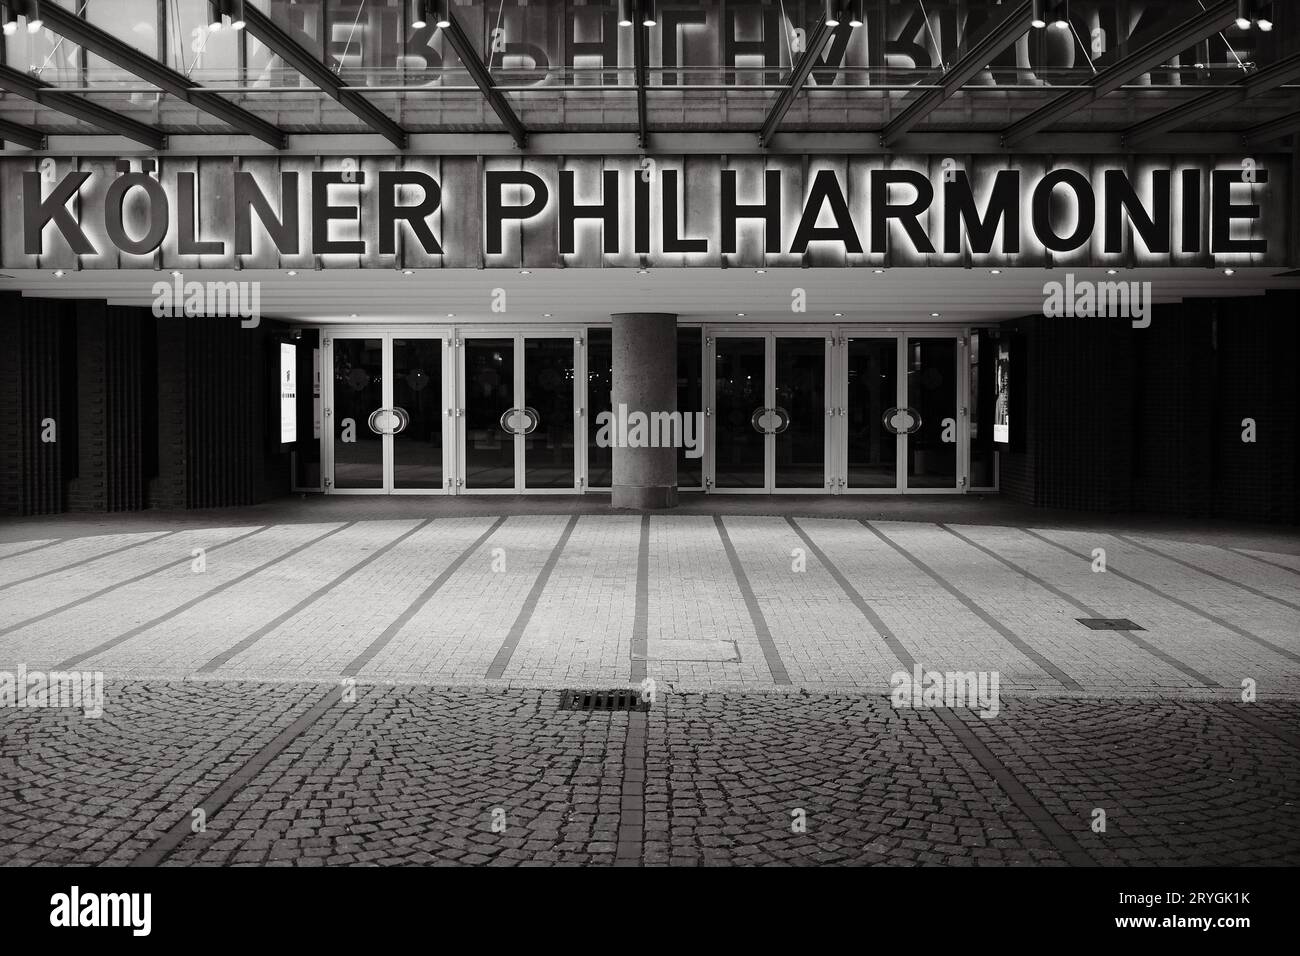 Plan en niveaux de gris de l'entrée et panneau lumineux de la Philharmonie Koelner à Cologne, Allemagne Banque D'Images